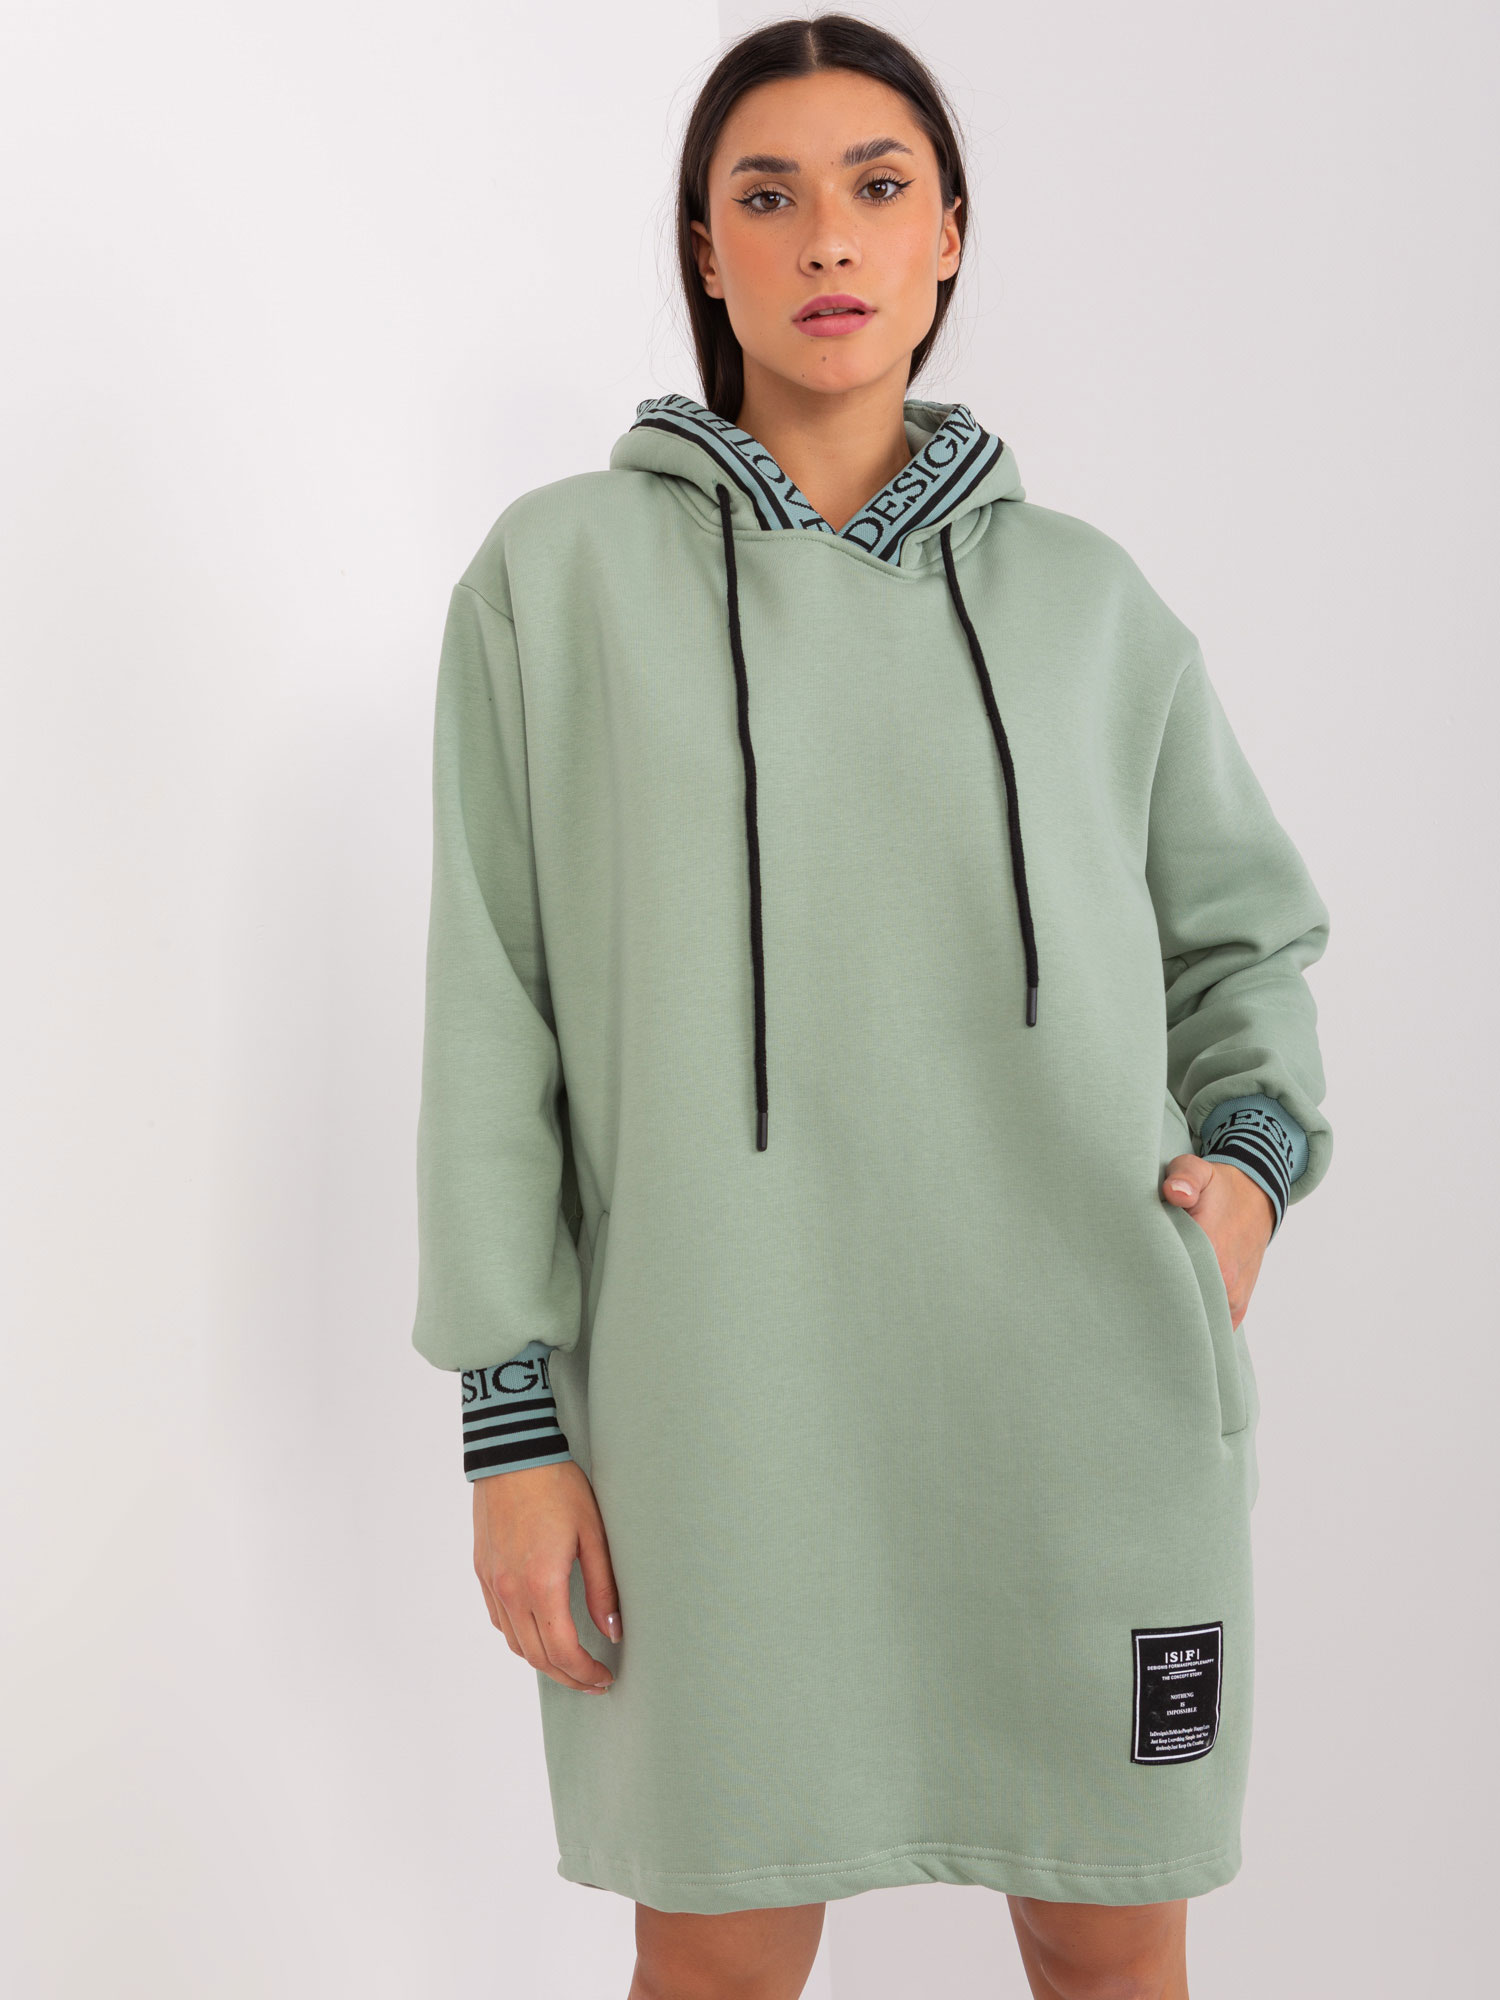 Pistáciové mikinové šaty s kapsami RV-TU-9224.95P-pistachio Velikost: L/XL